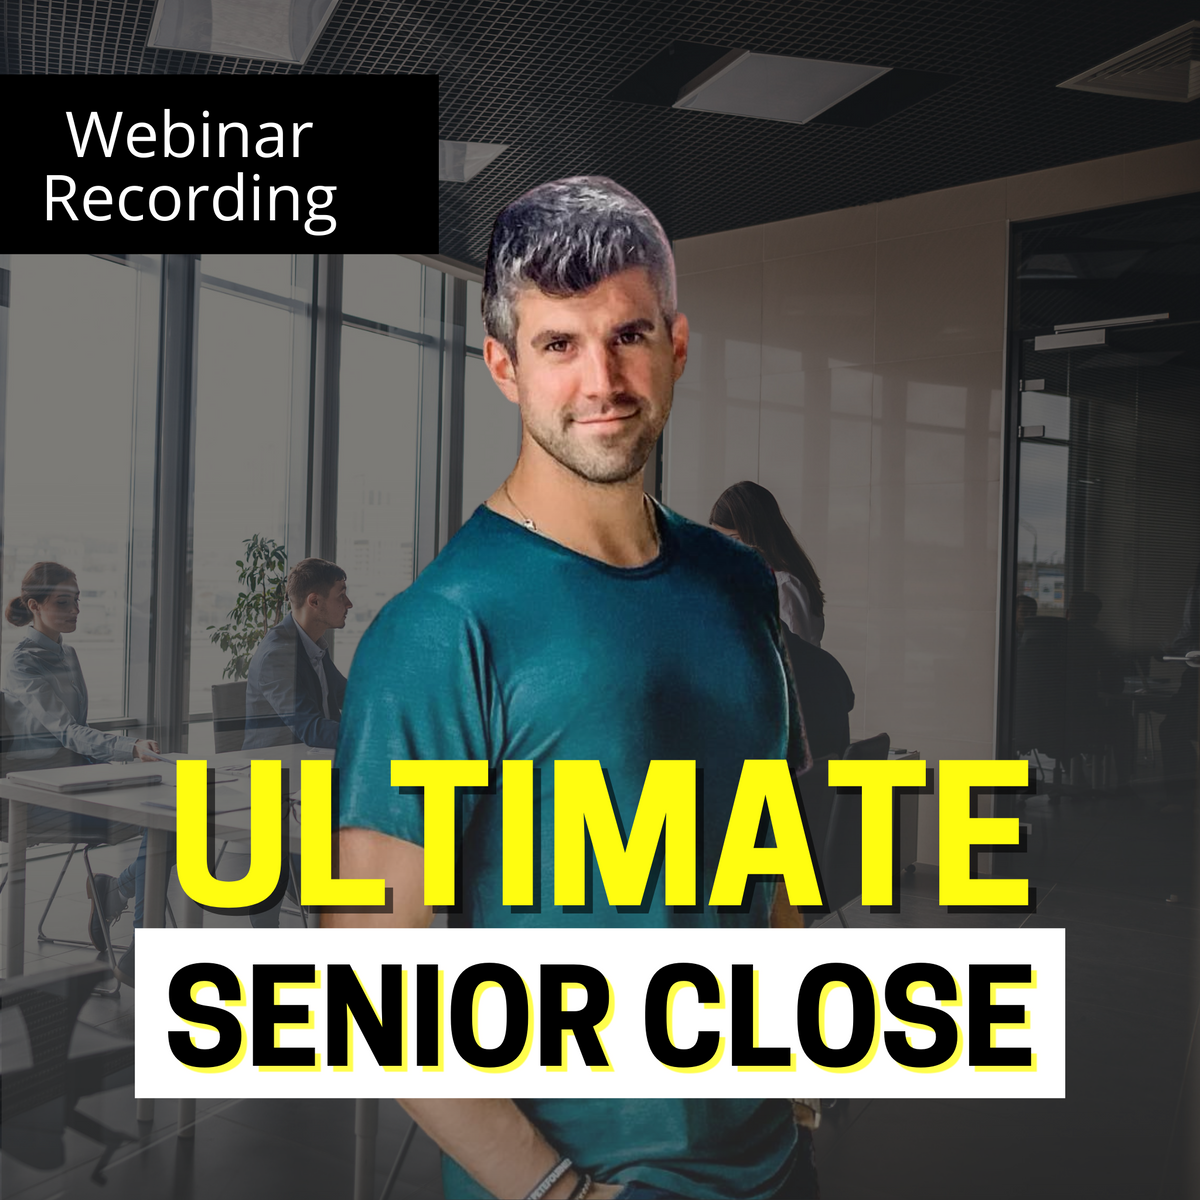 Training Video: Ultimate Senior Close